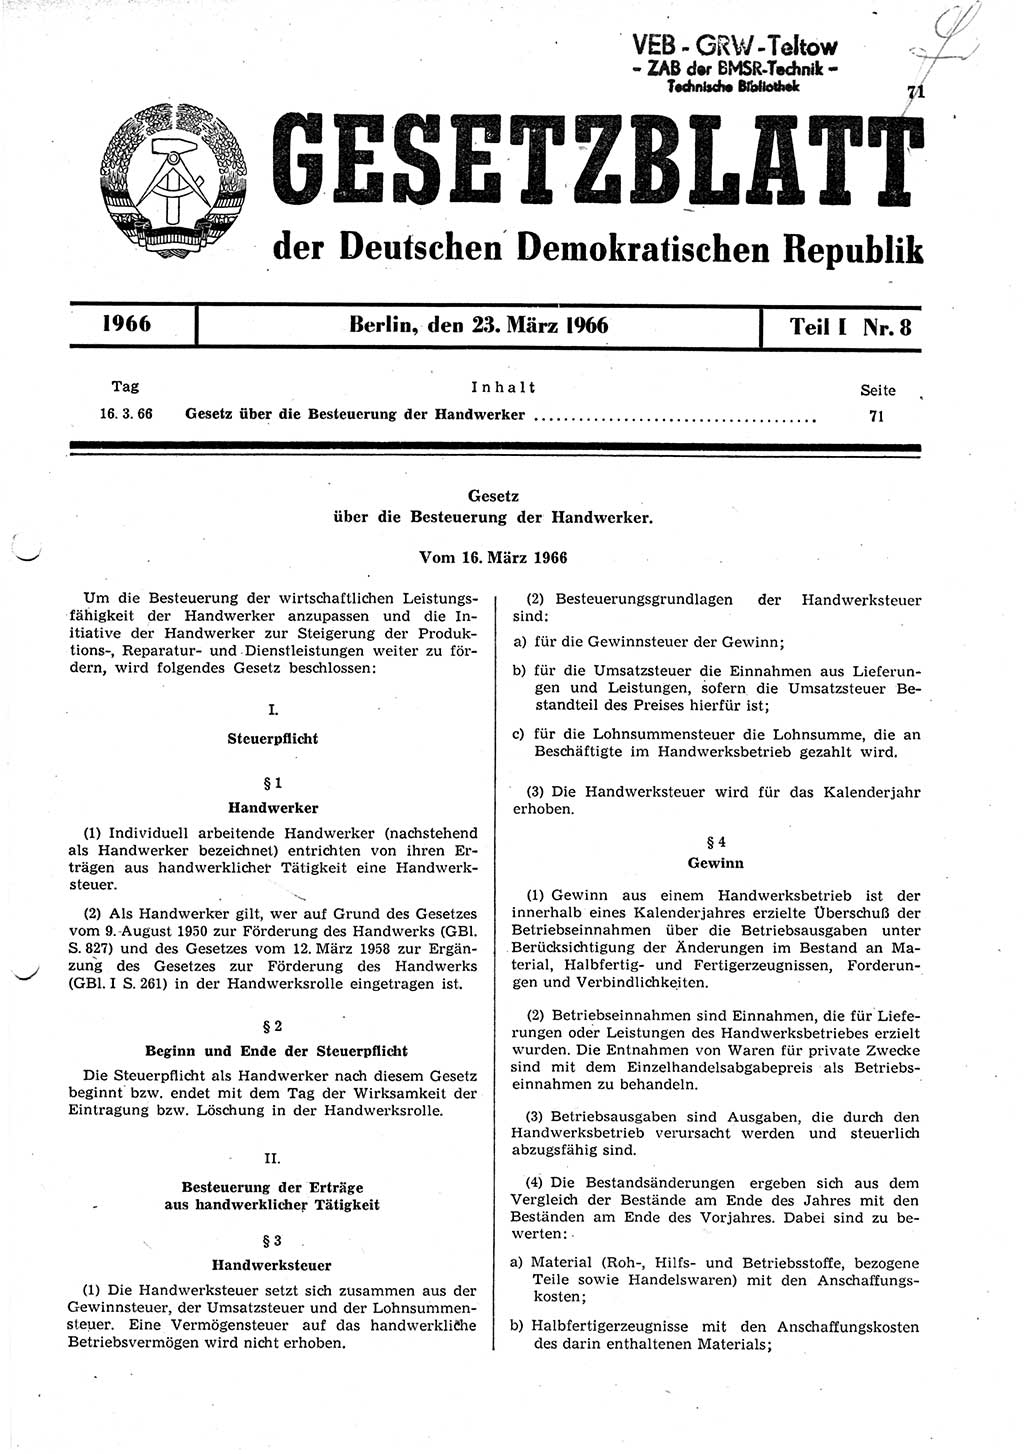 Gesetzblatt (GBl.) der Deutschen Demokratischen Republik (DDR) Teil Ⅰ 1966, Seite 71 (GBl. DDR Ⅰ 1966, S. 71)